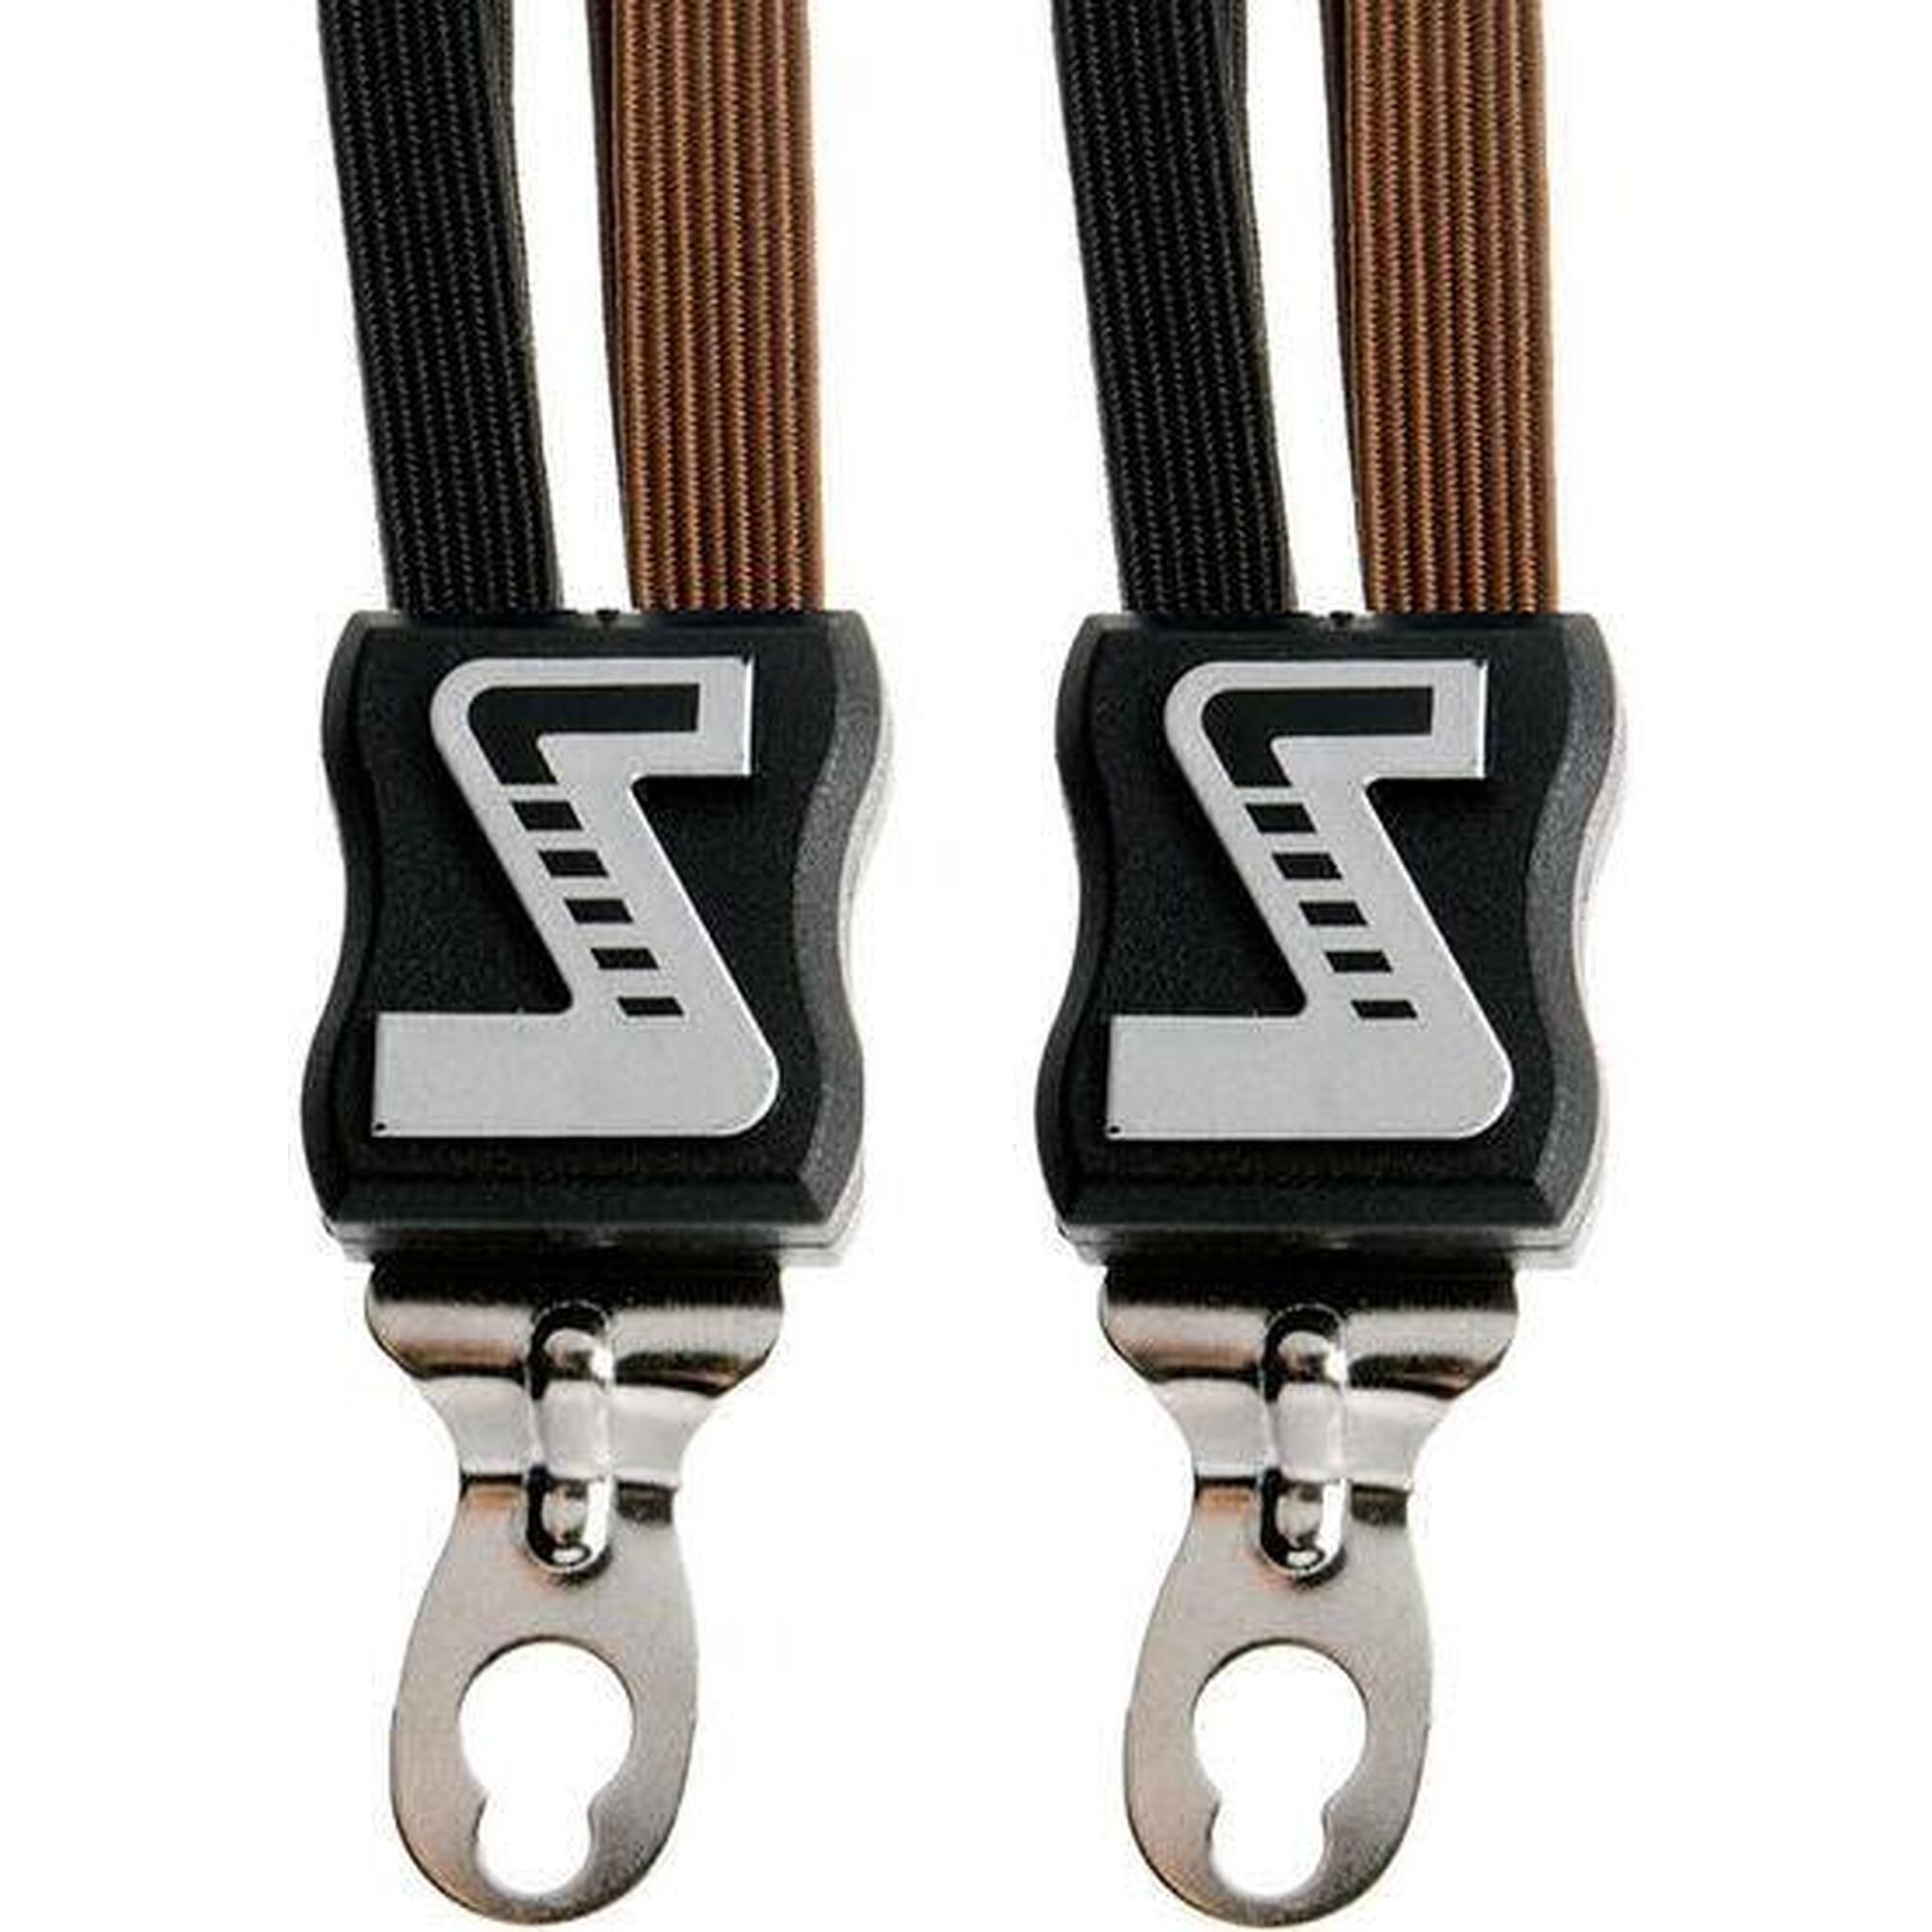 Snelbinder Quattro extra sterk met 4 binders - zwart/bruin